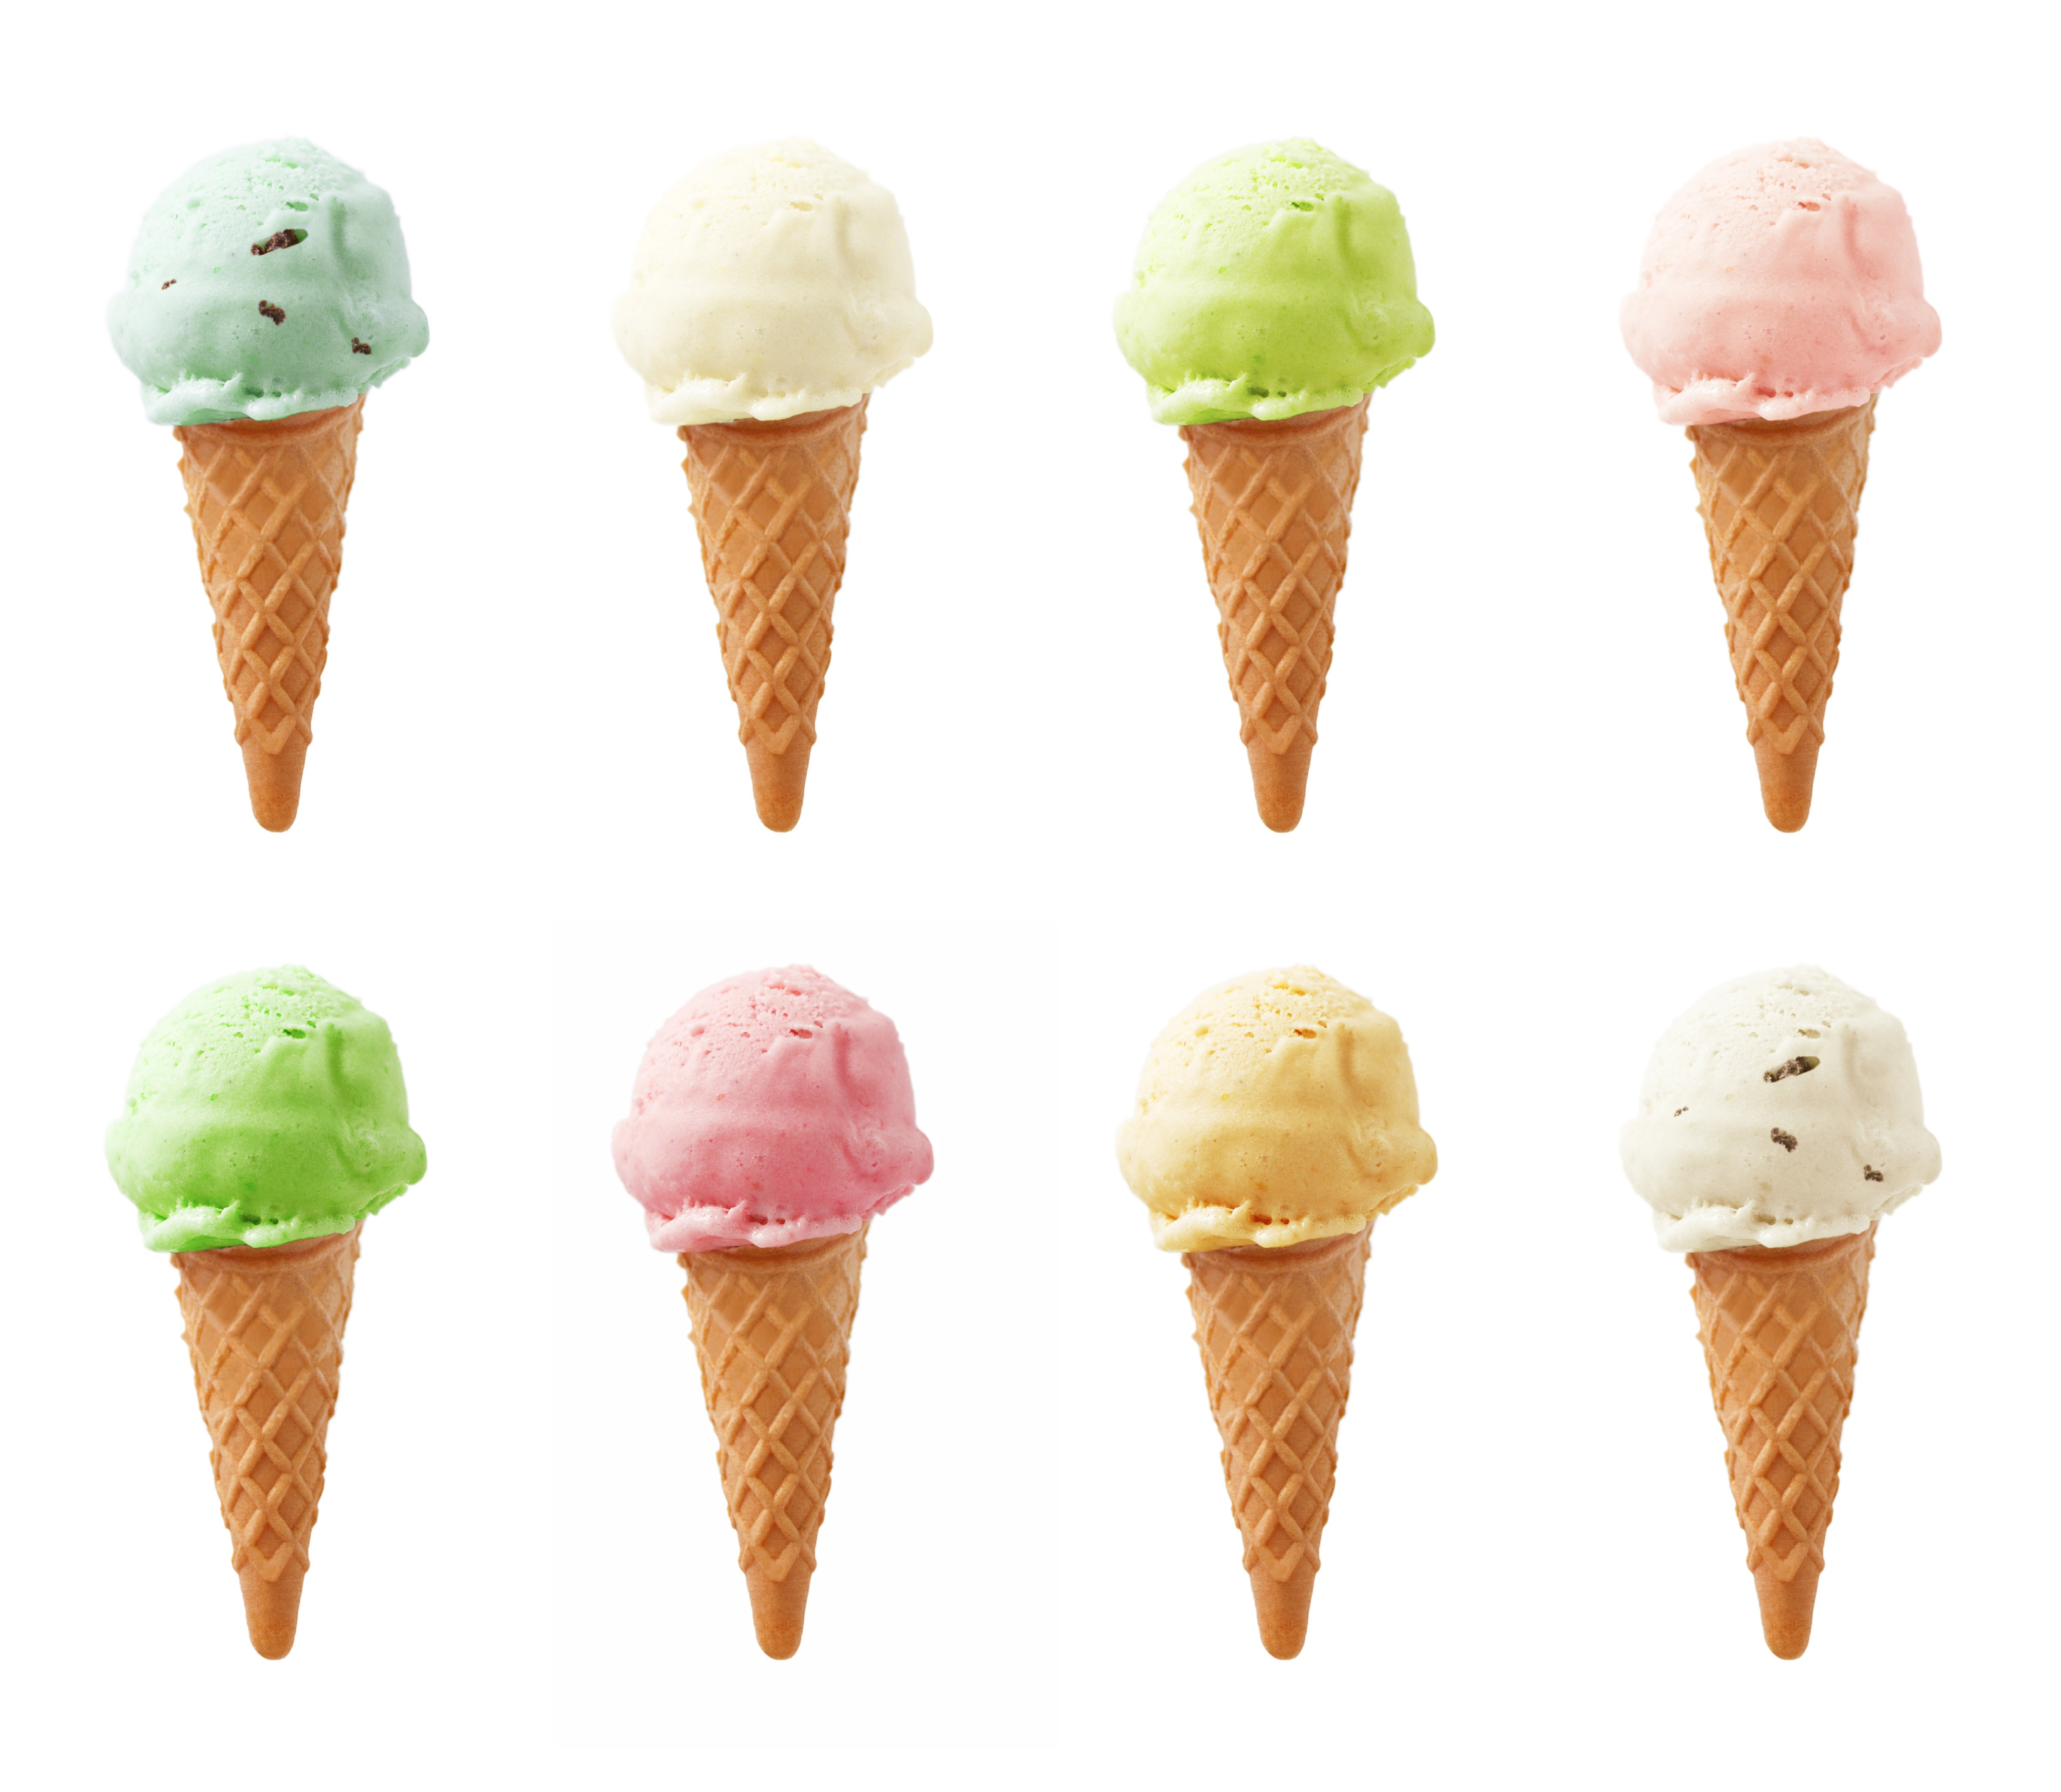 Ice Cream - Eight flavors